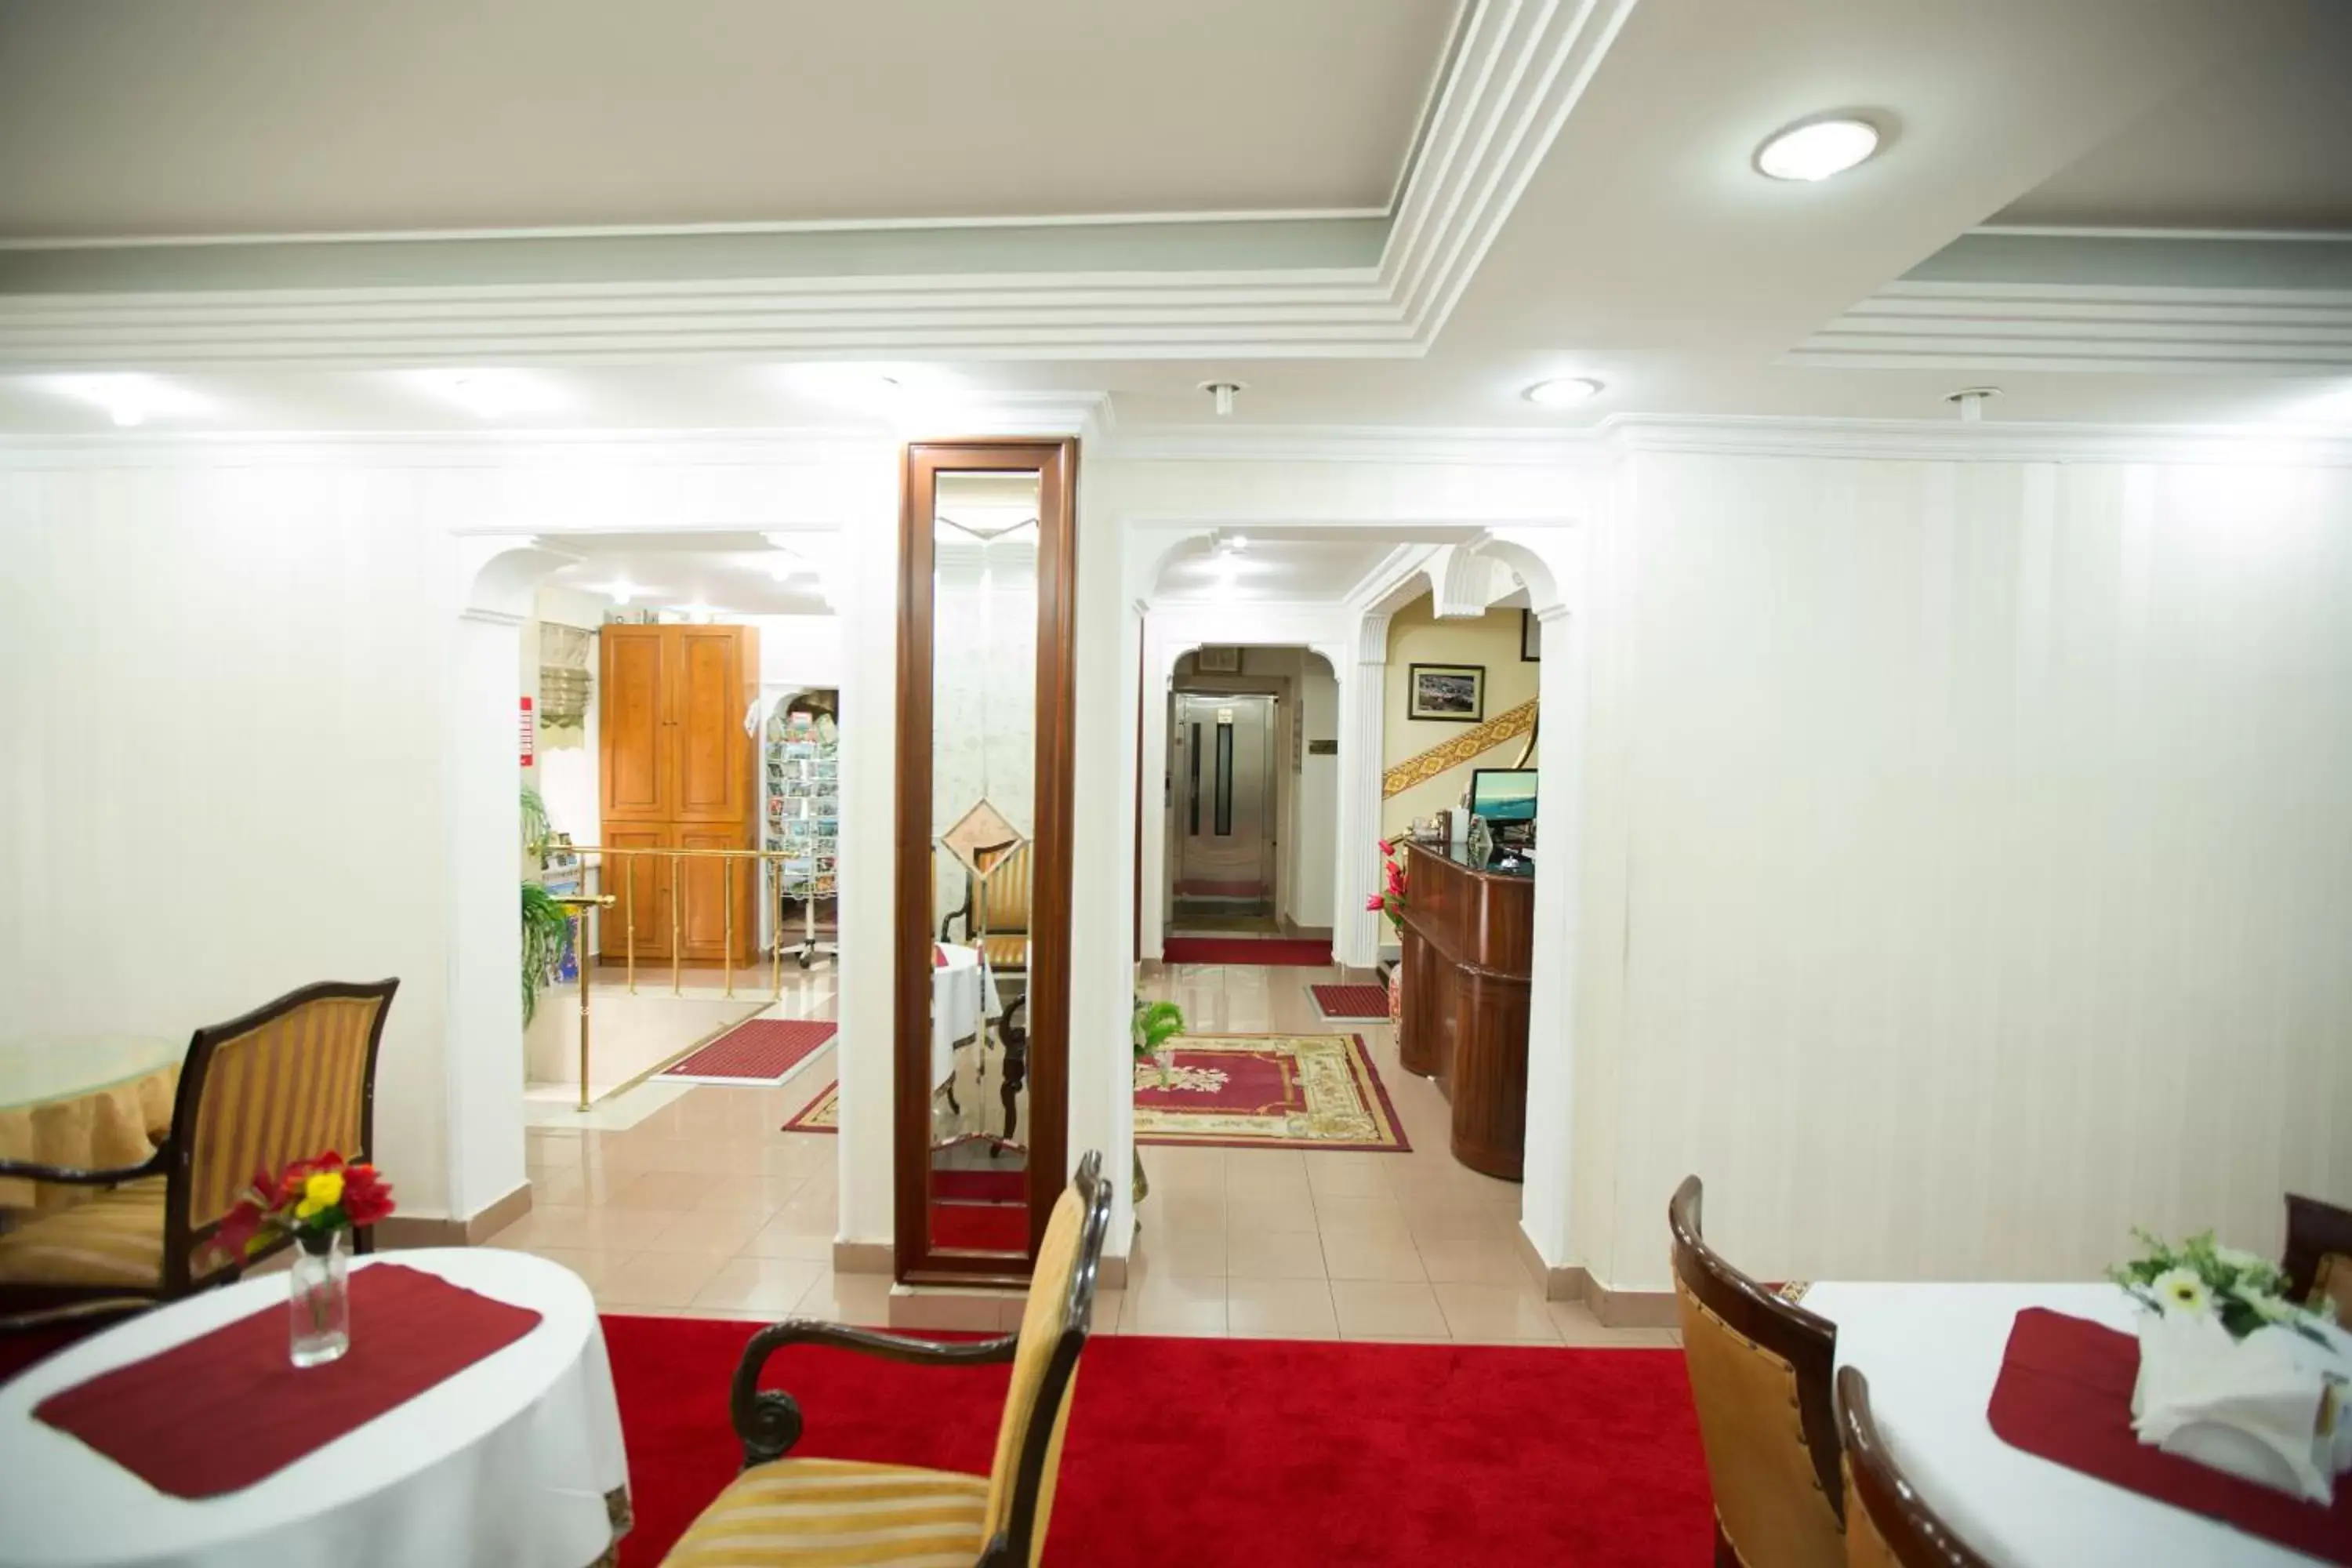 Lobby or reception in Sirkeci Emek Hotel